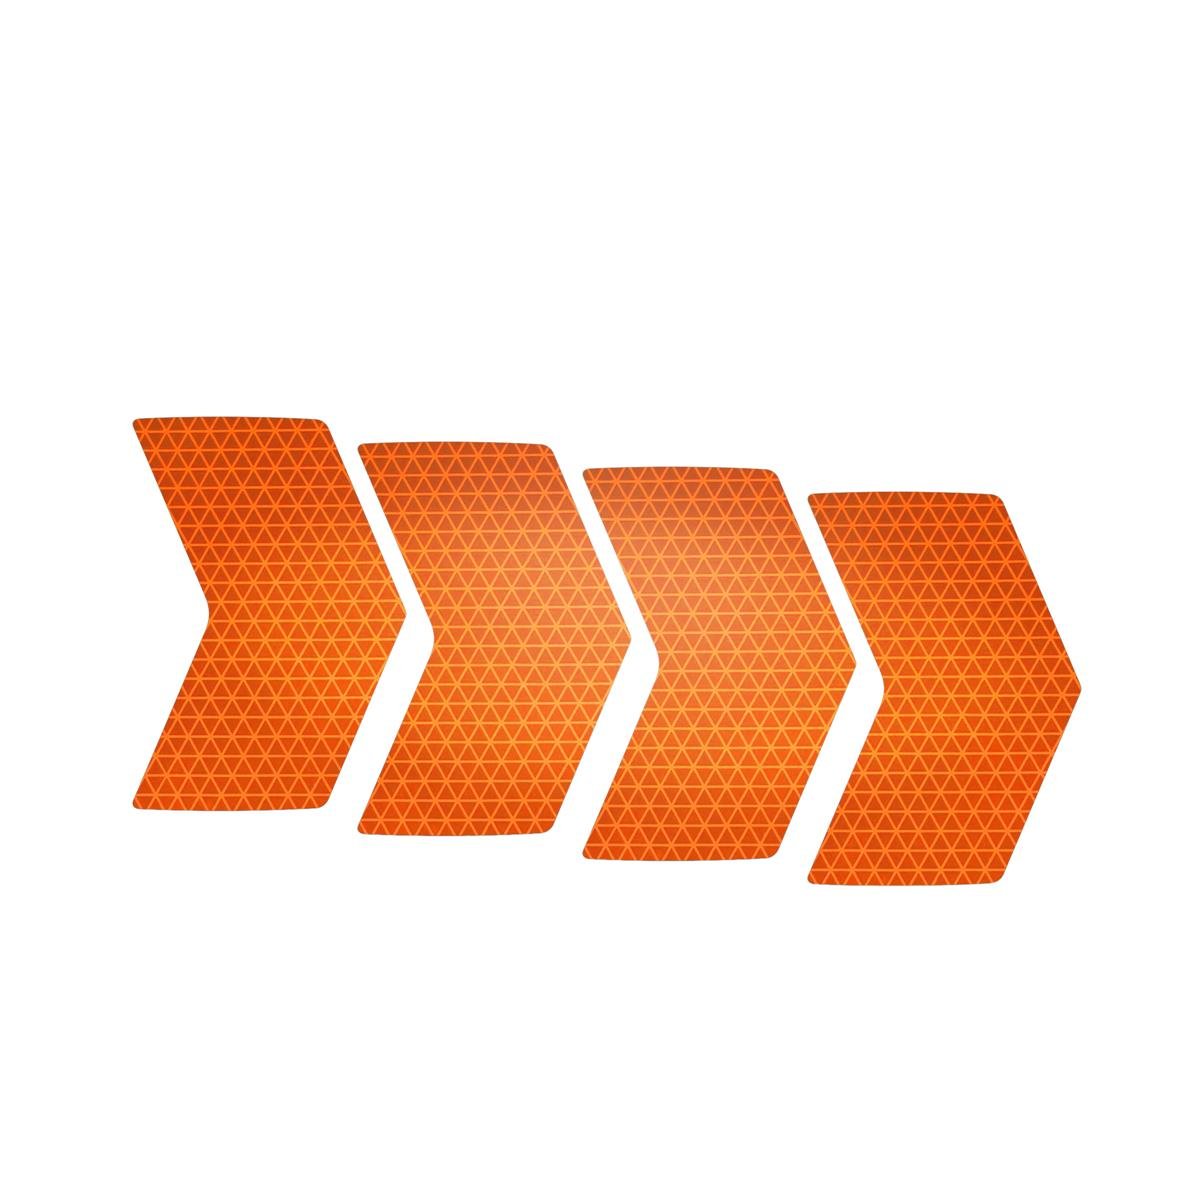 Riesel Design Stickers Re:flex Rim Reflective, Bright Orange